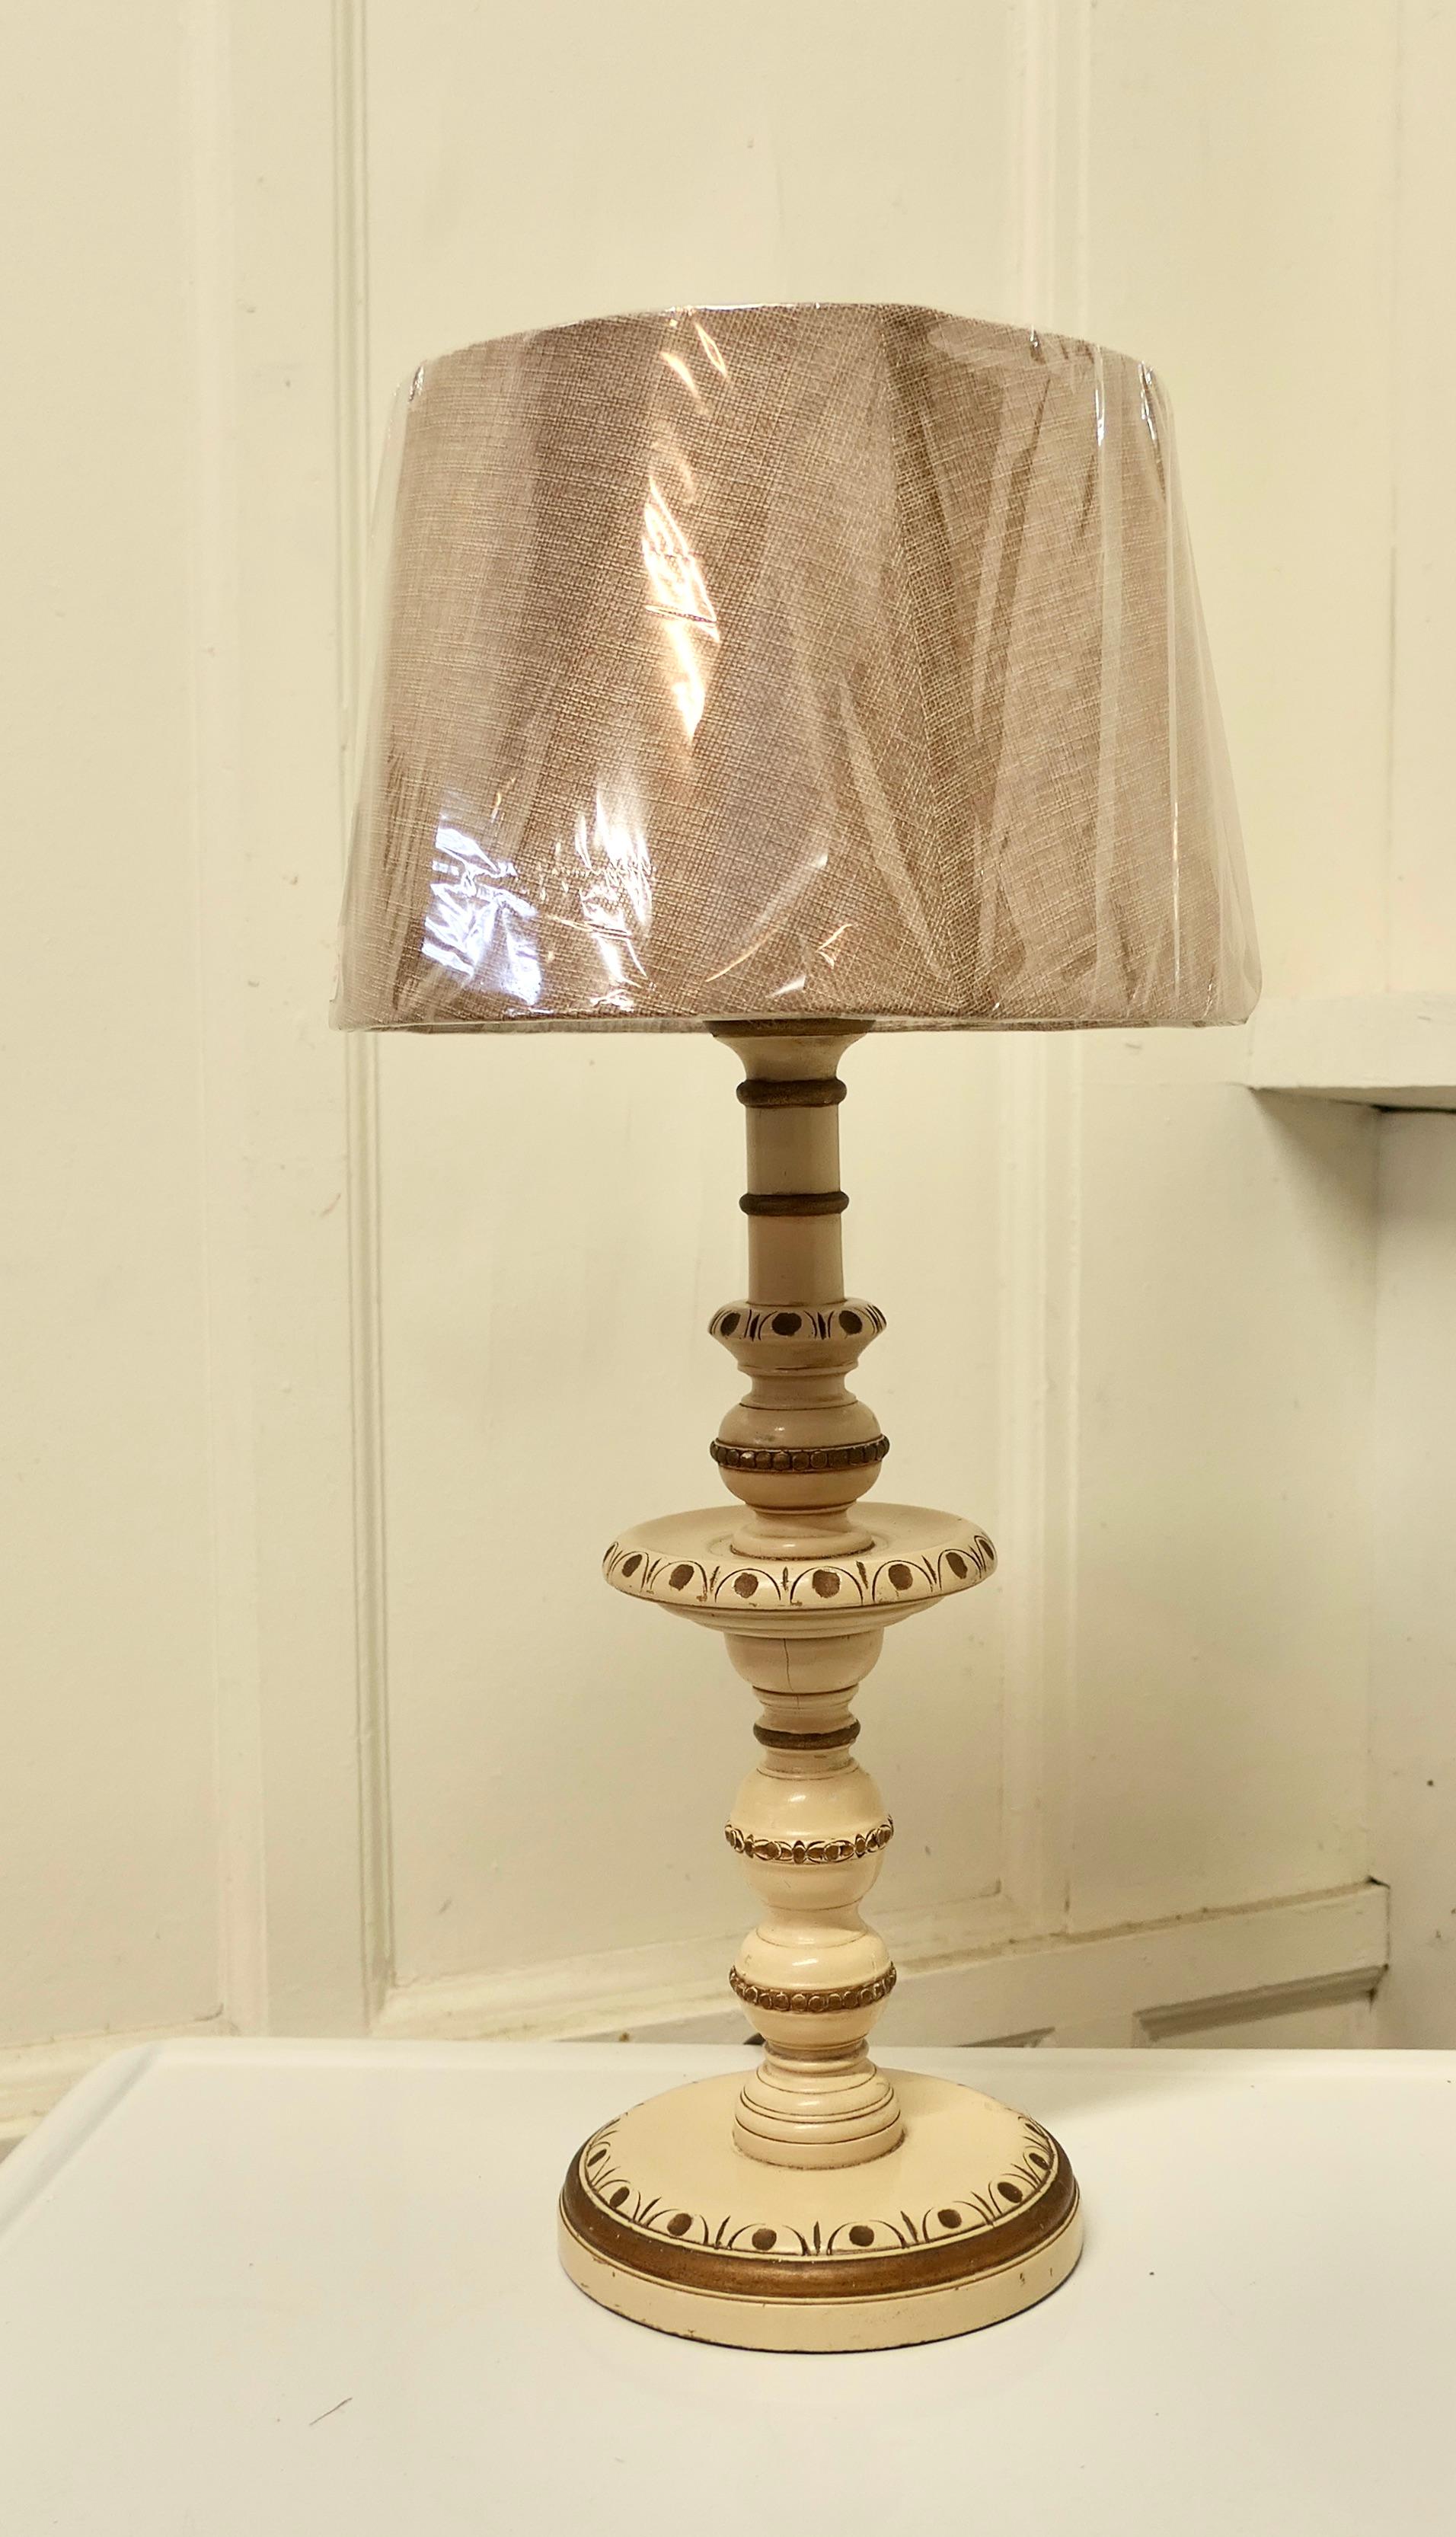 Geschnitzte und bemalte Tischlampe im Folk Art Stil.

Diese Lampe hat eine geschnitzte Dekoration in Creme mit goldenen Highlights gemalt, die Lampe kommt mit einem neuen groben Leinen Lampenschirm.
Die Lampe ist 25